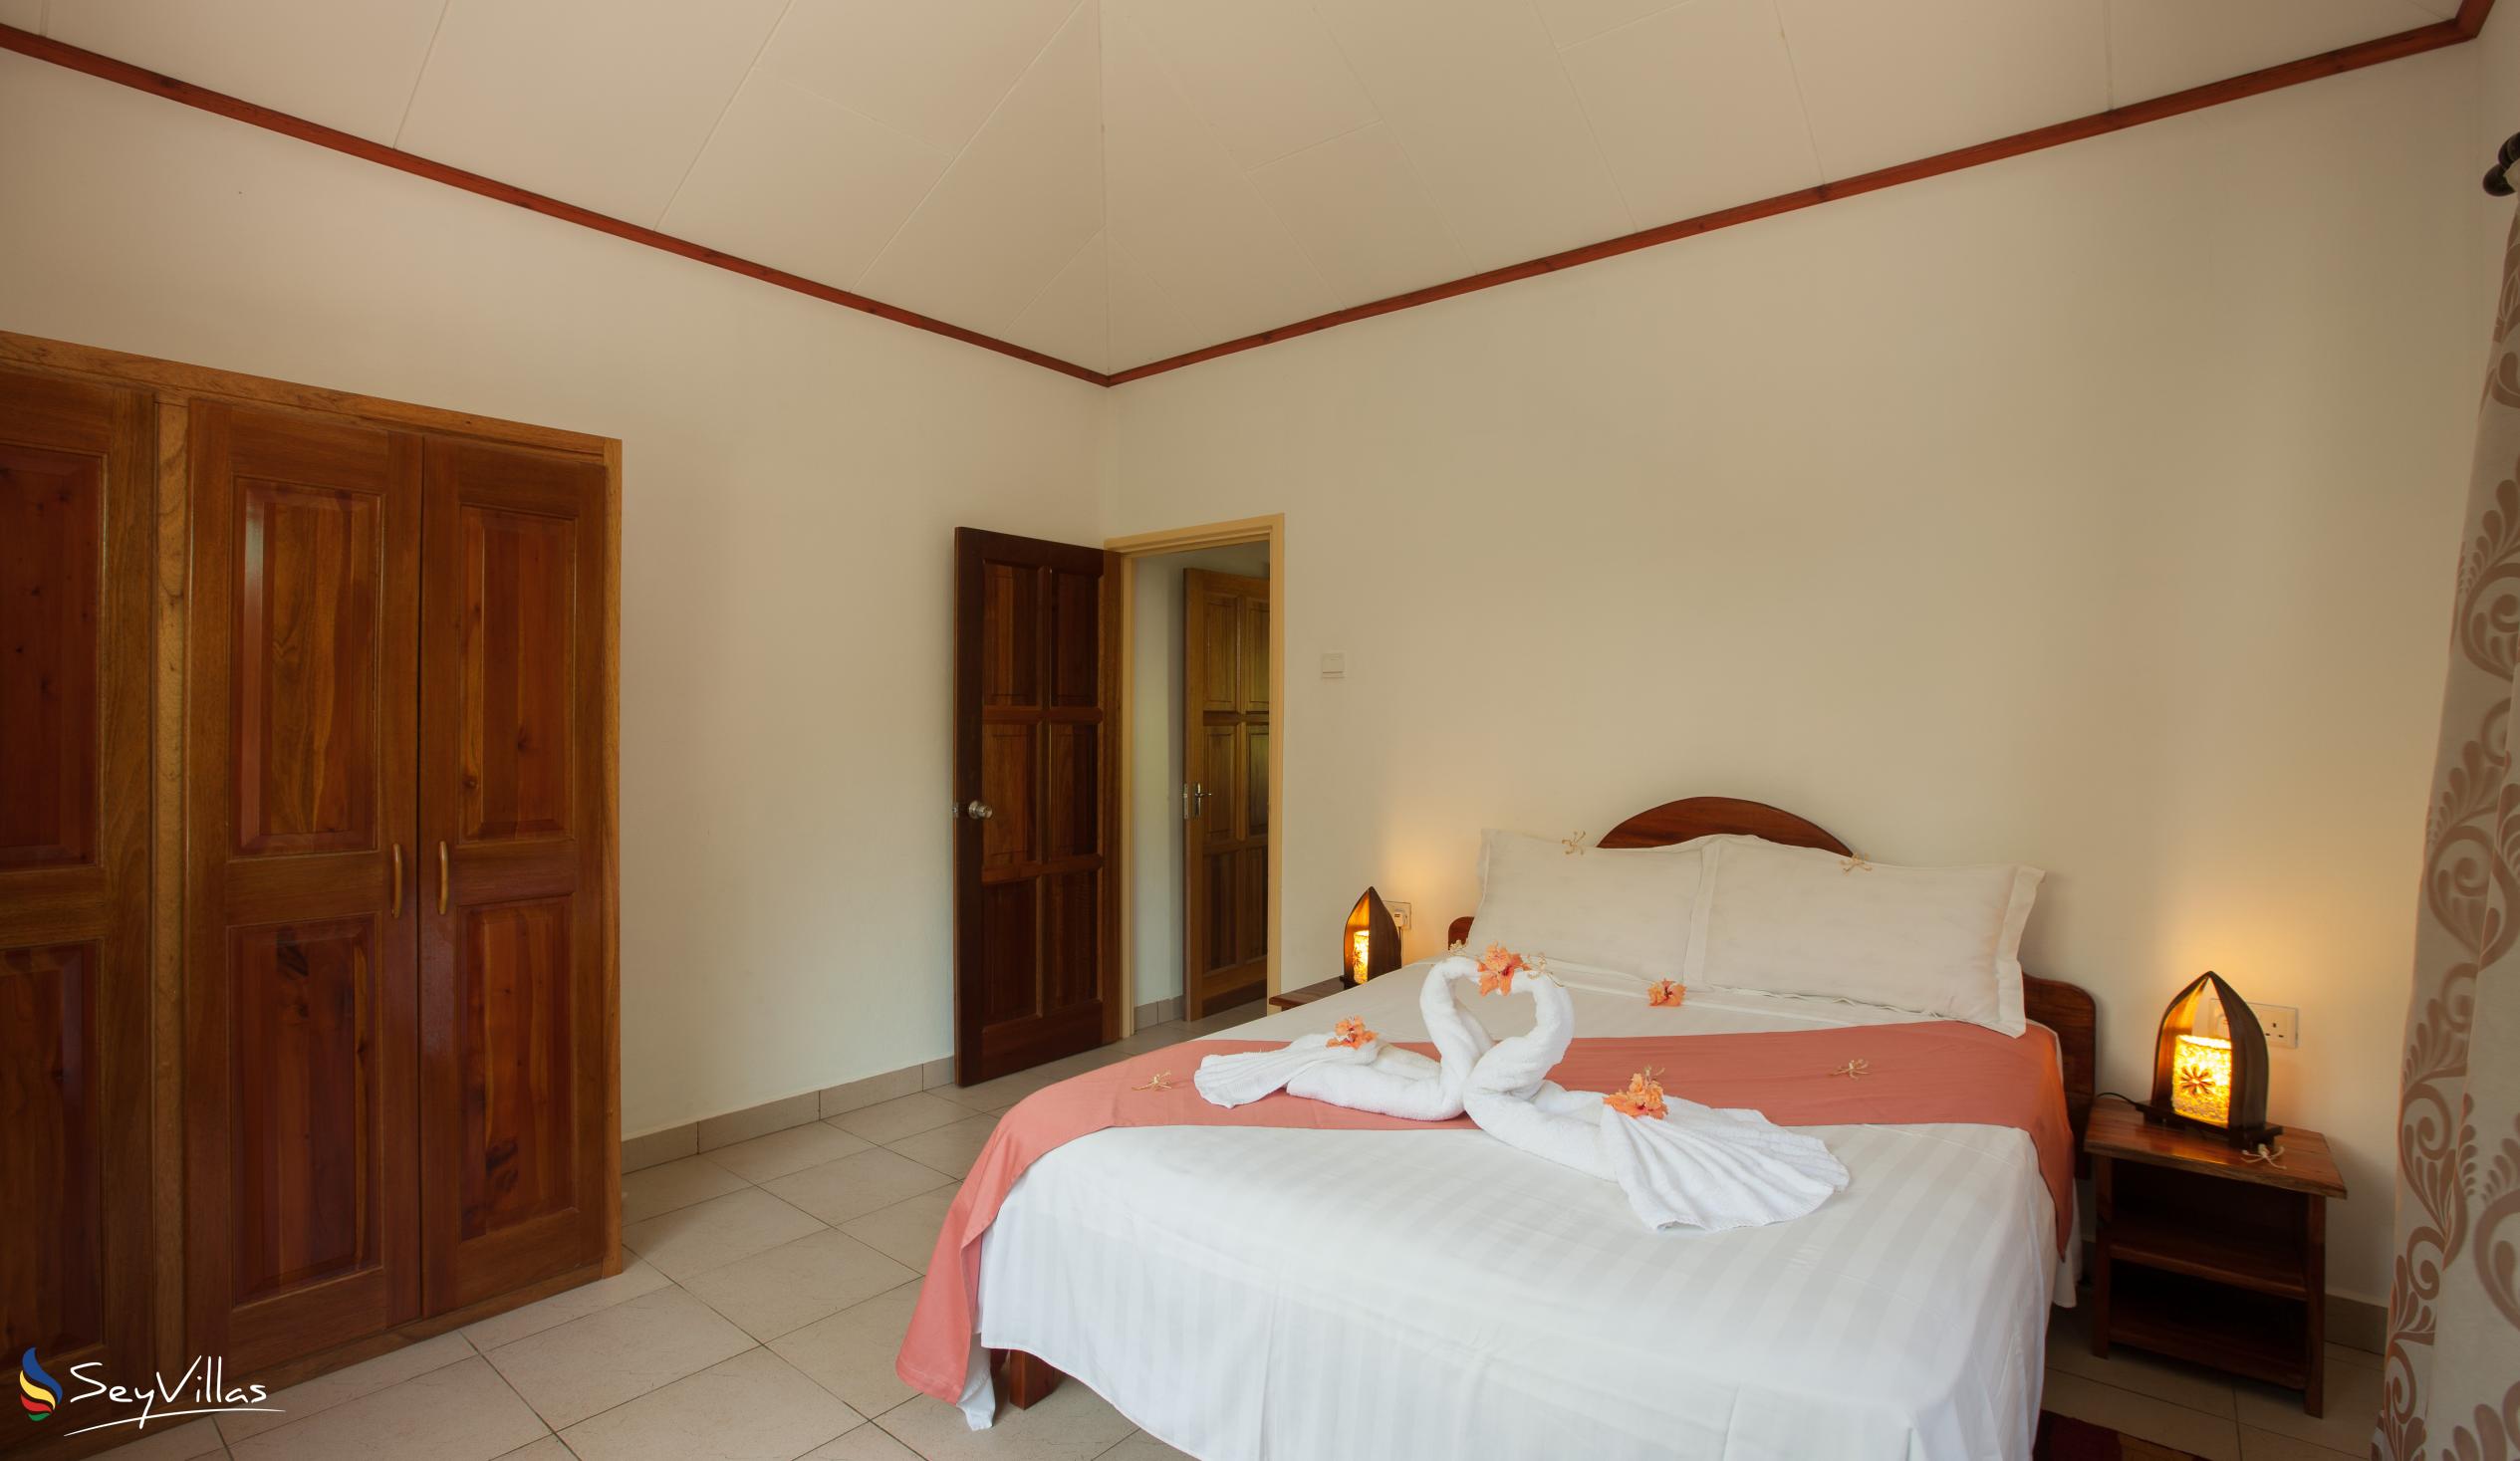 Foto 28: Hostellerie La Digue - Chalet 3 chambres - La Digue (Seychelles)